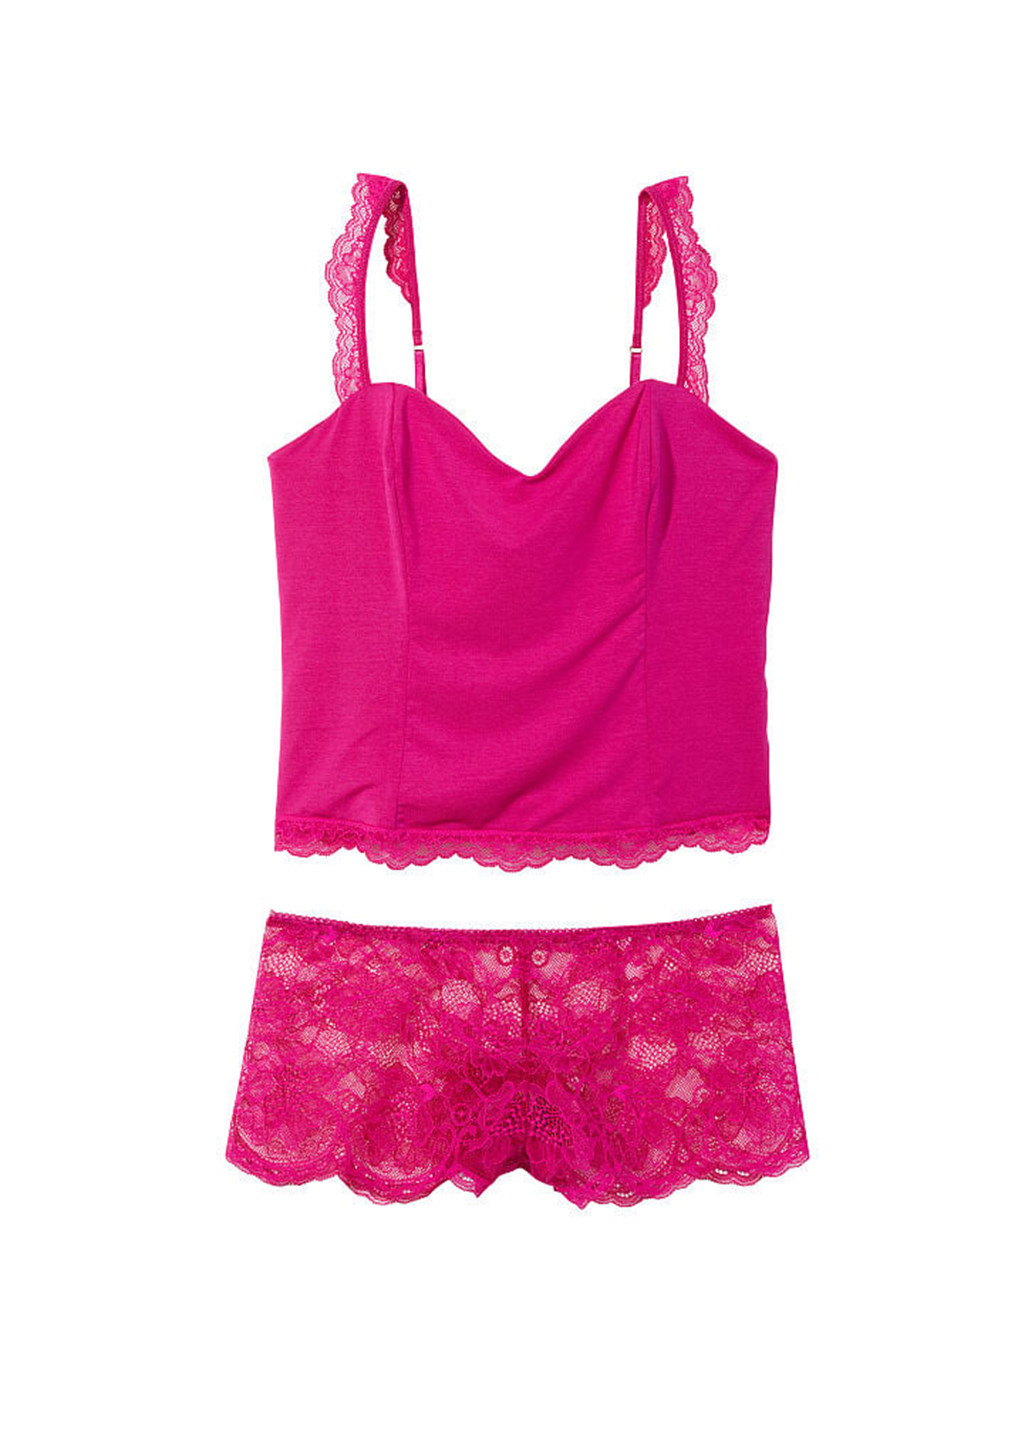 Розовая всесезон пижама (топ, шорты) топ + шорты Victoria's Secret